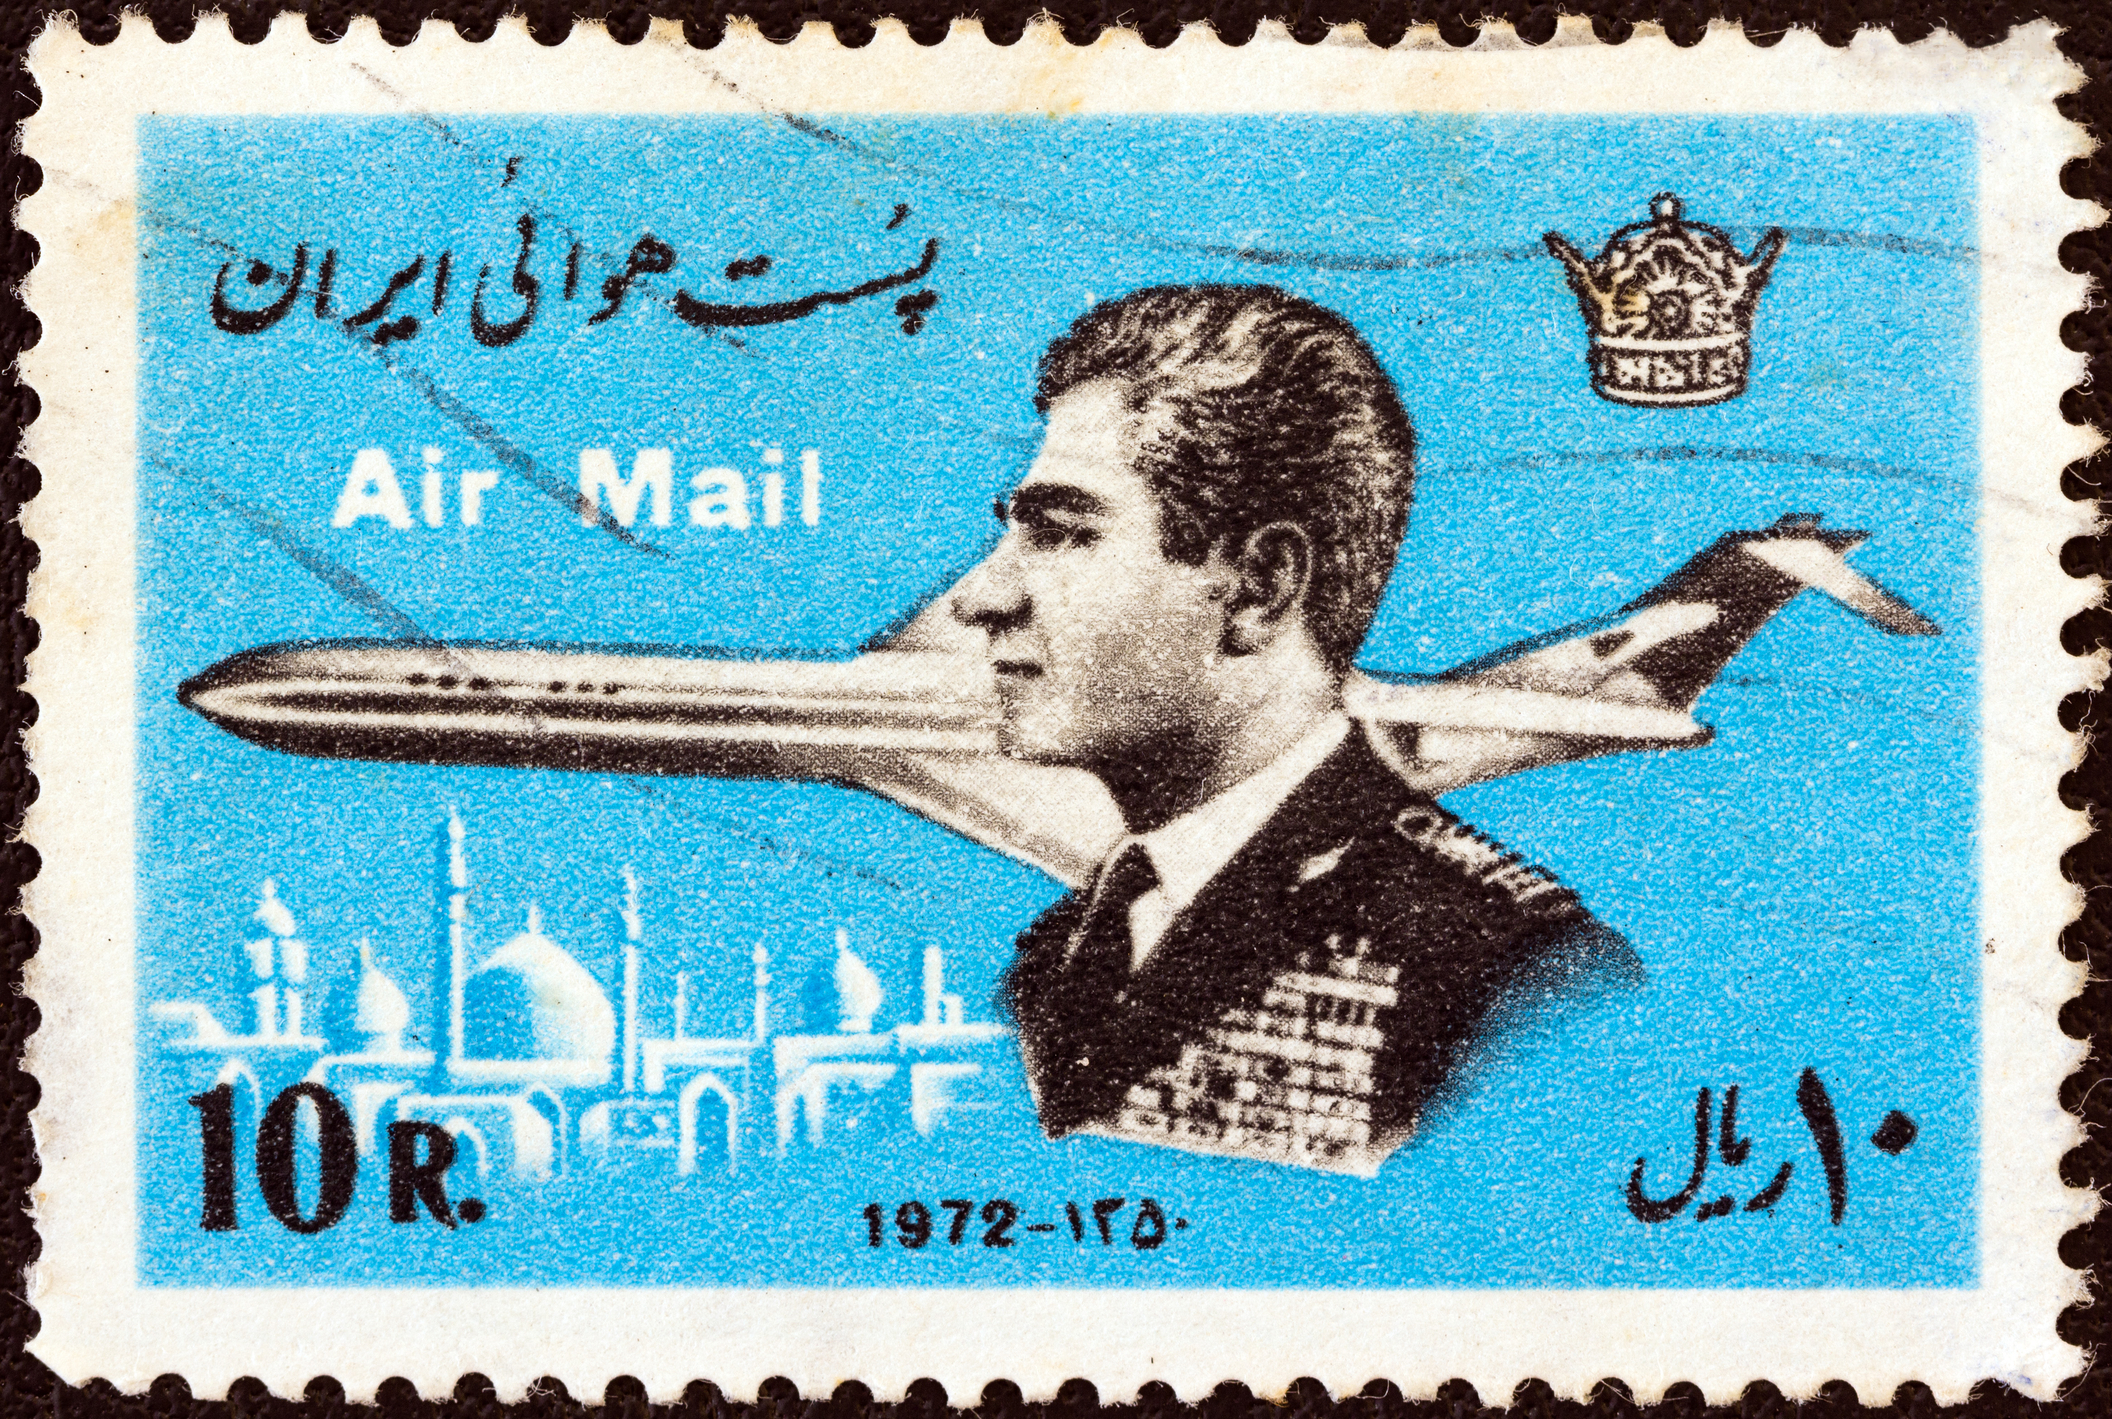 Timbru poștal cu șahul Pahlavi și un avion, din jurul anului 1972, sursă foto dreamstime. Șahul Pahlavi a ajuns la putere fiind susținut de britanici